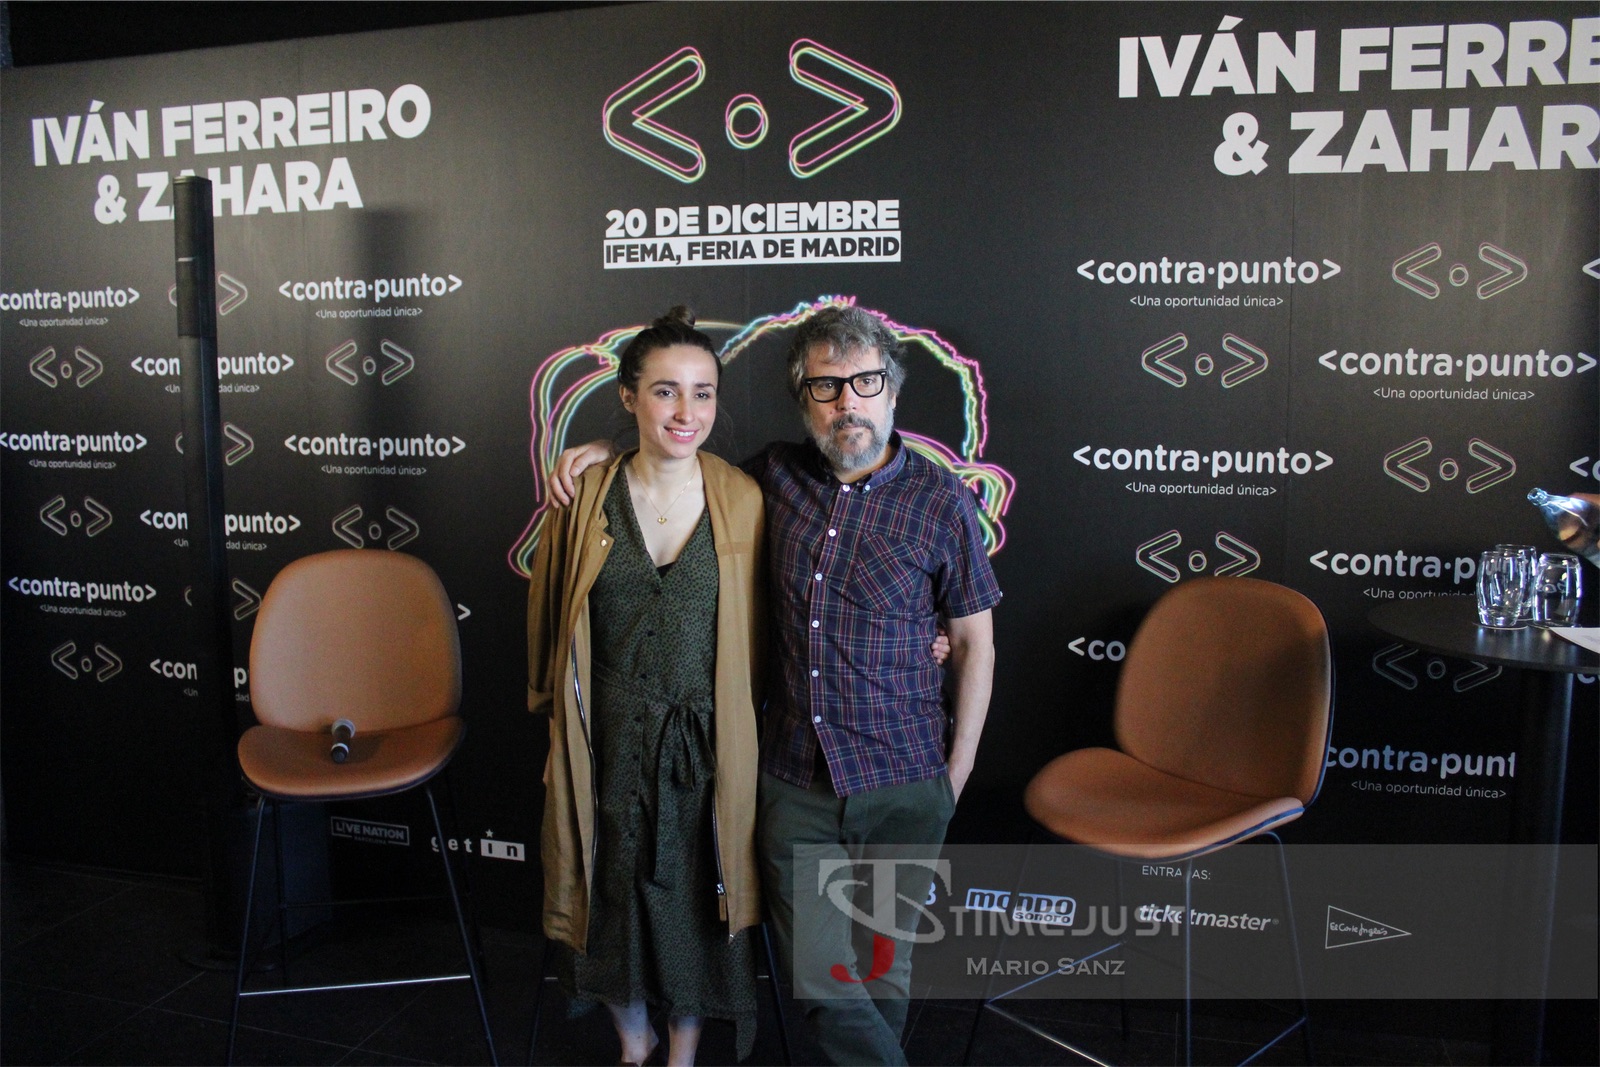 Iván Ferreiro y Zahara presentan 'contrapunto'